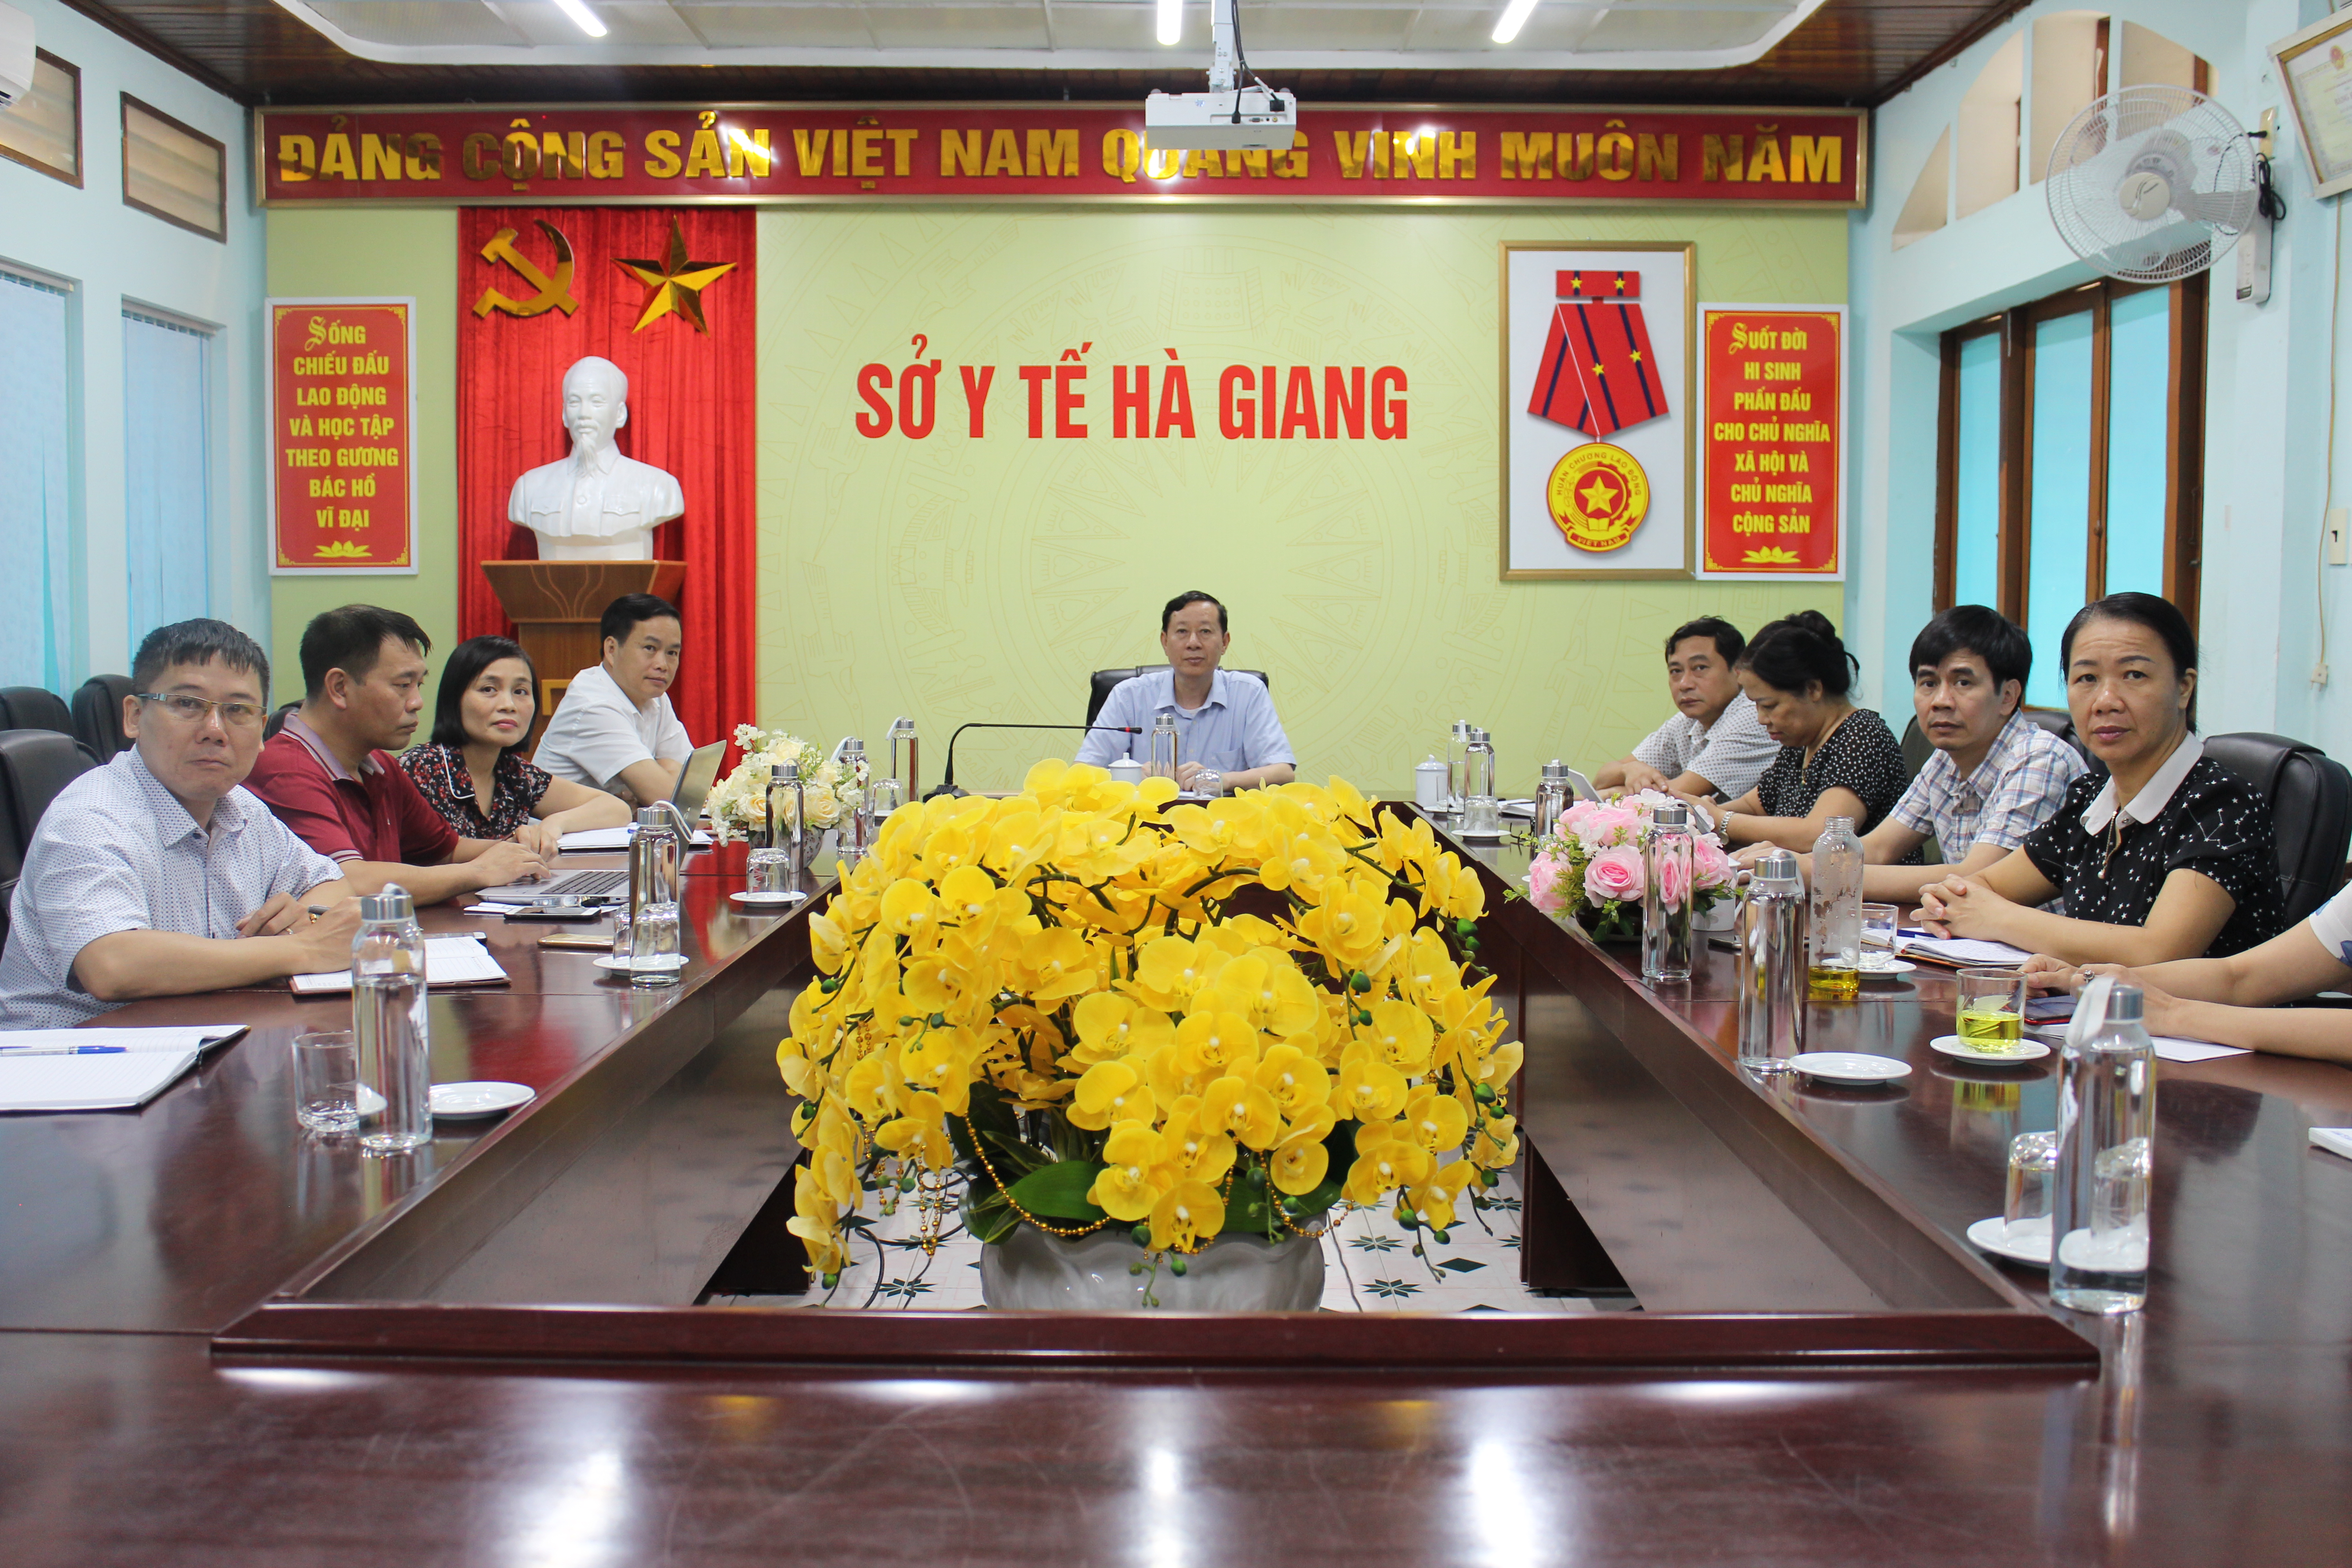 Đồng chí Lương Viết Thuần, Giám đốc Sở Y tế dự và chủ trì Hội nghị tại điểm cầu Hà Giang